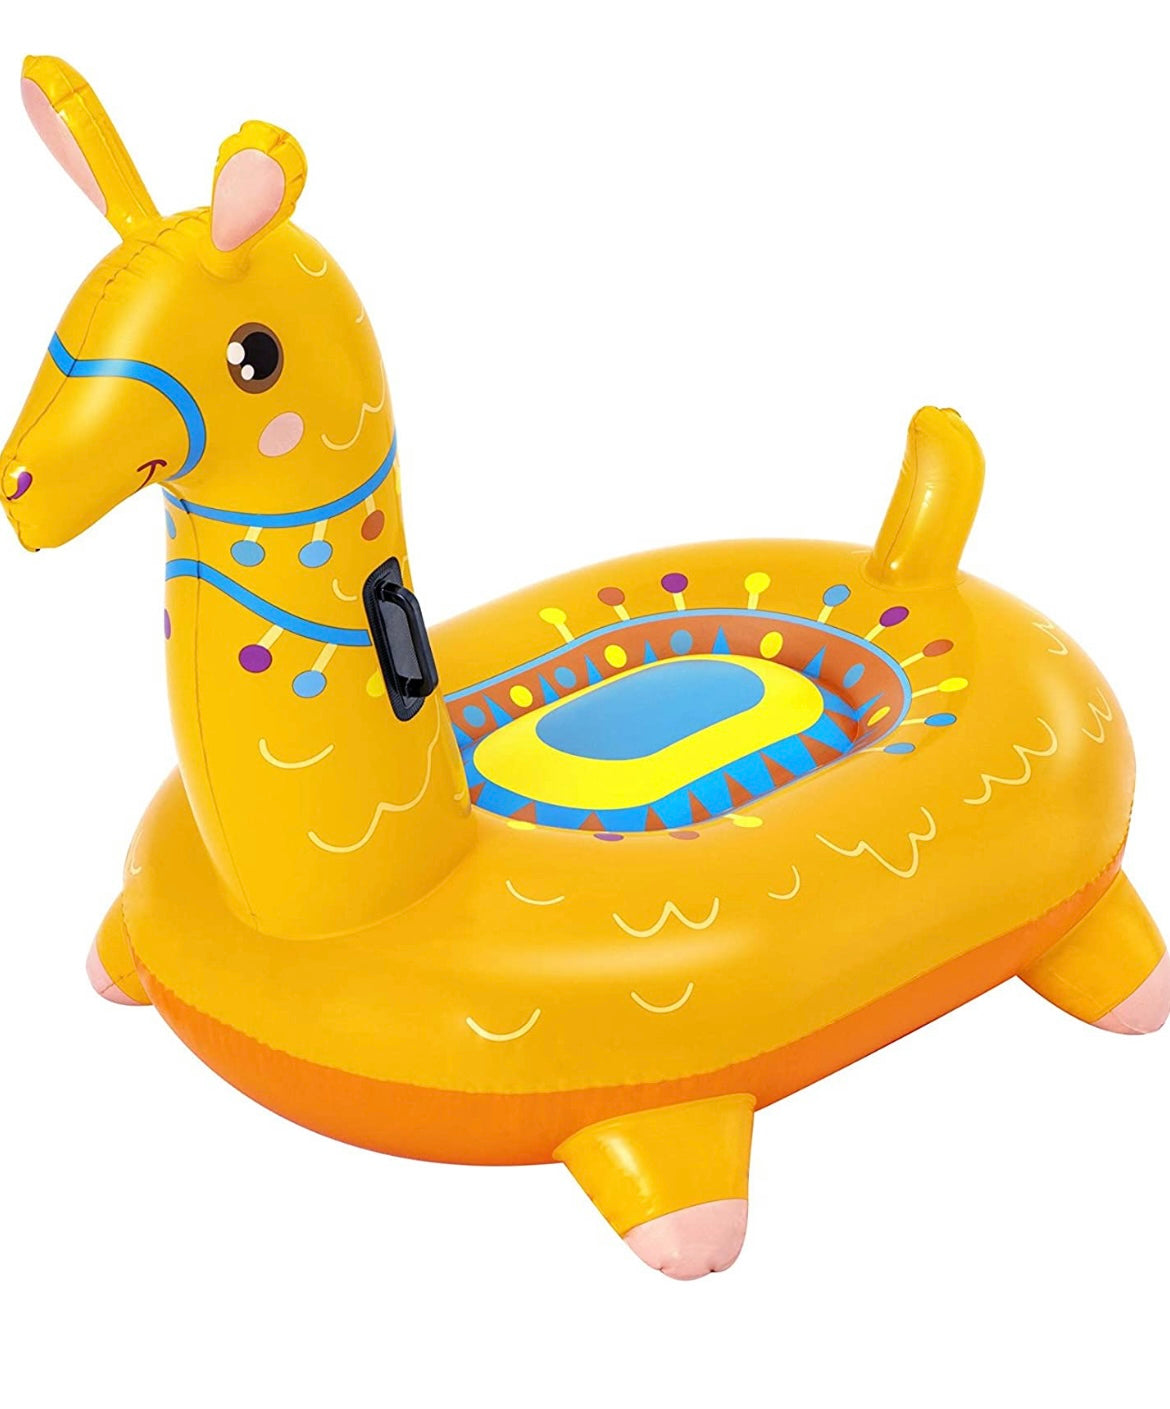 Llama Kiddie Ride-On Inflatable